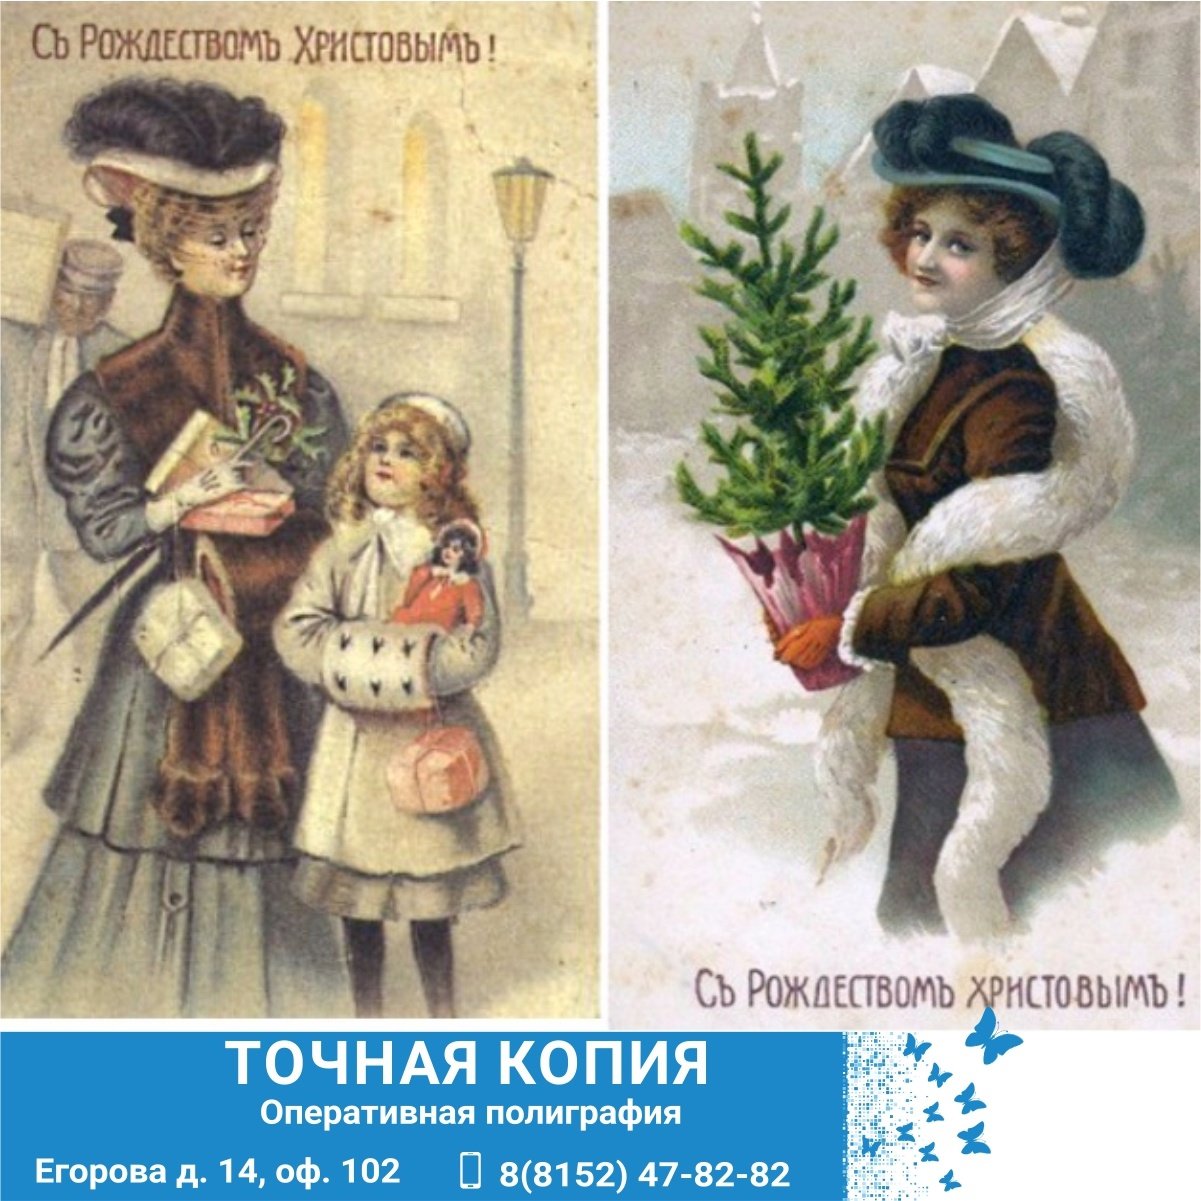 Рождественские открытки начала ХХ века.